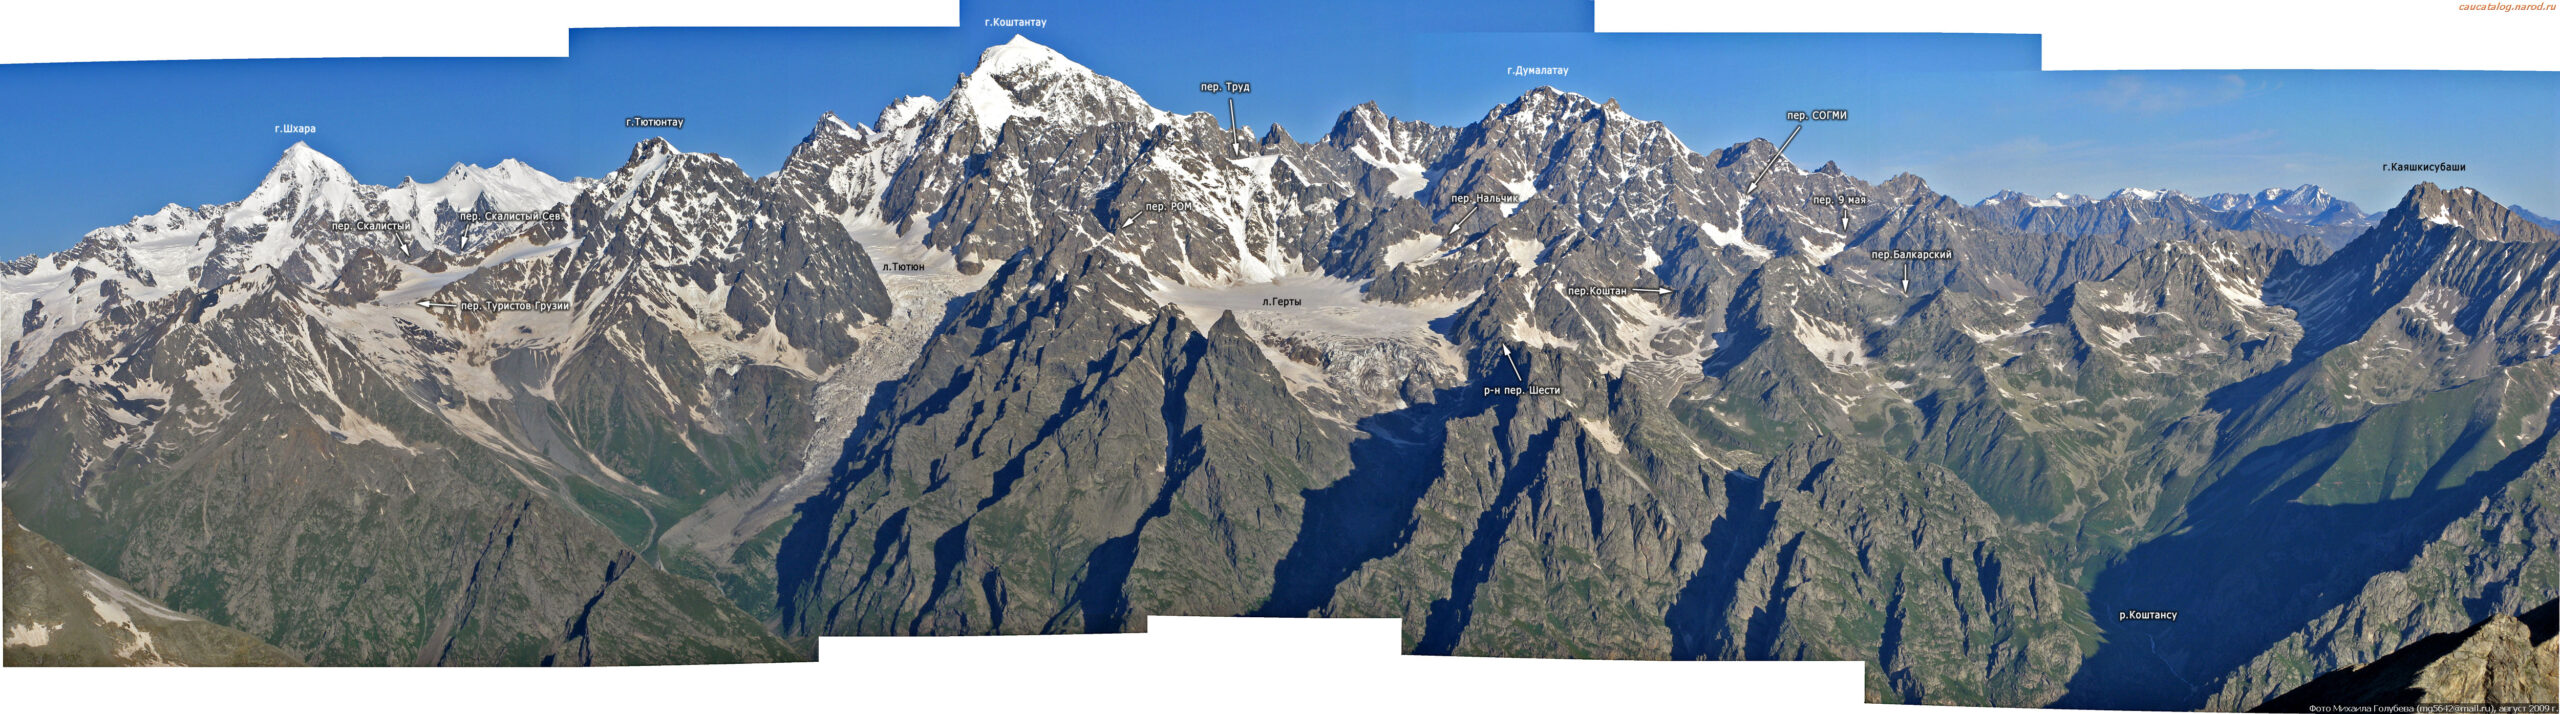 Кавказский хребет с названиями вершин